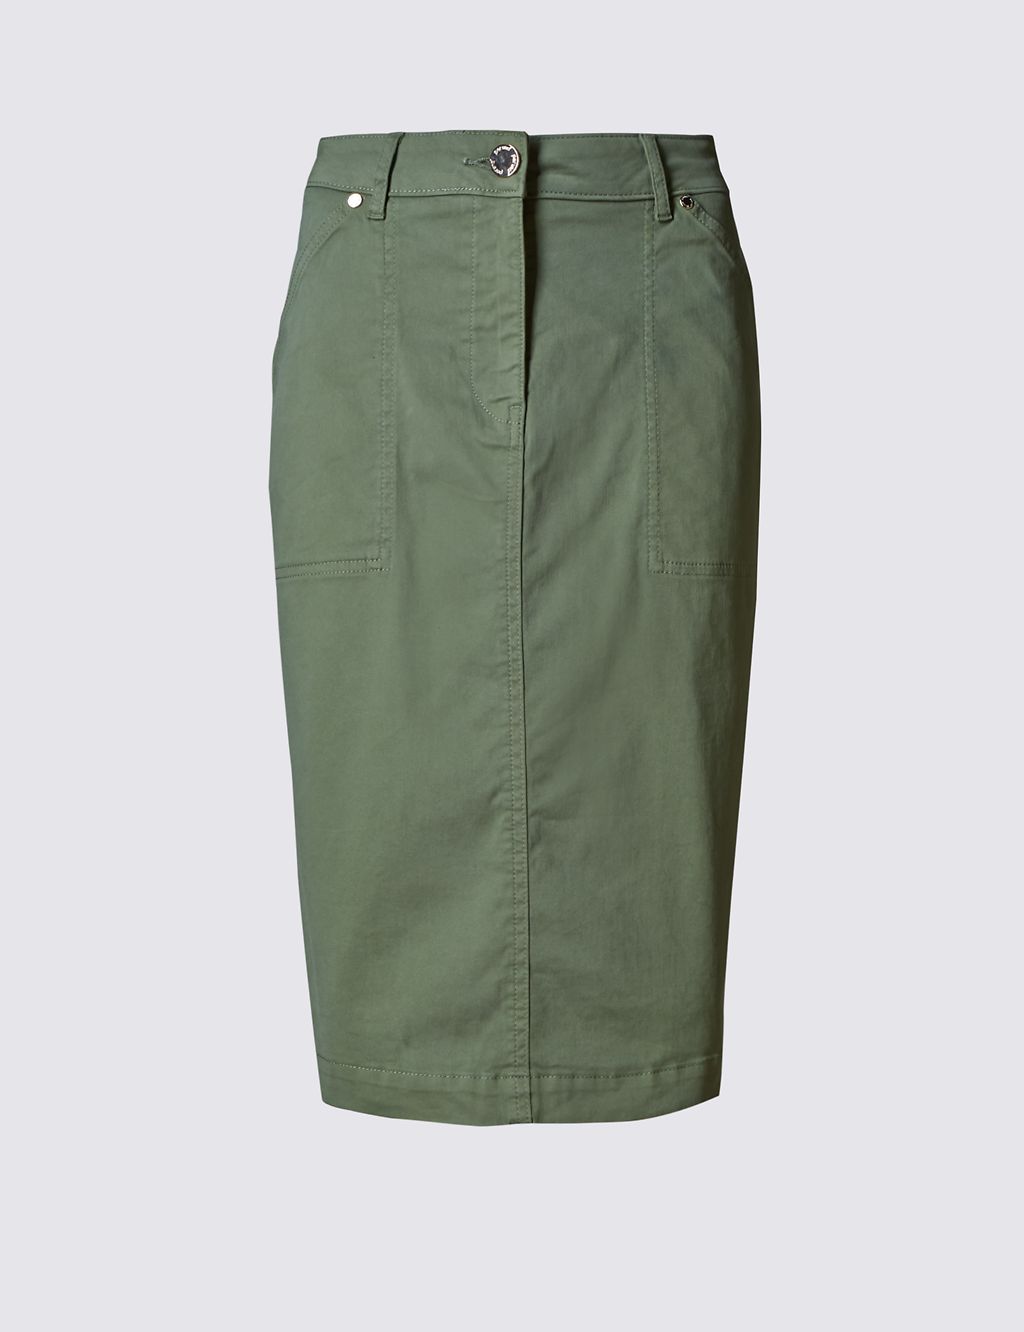 Denim Utility A-Line Knee Length Skirt 1 of 3